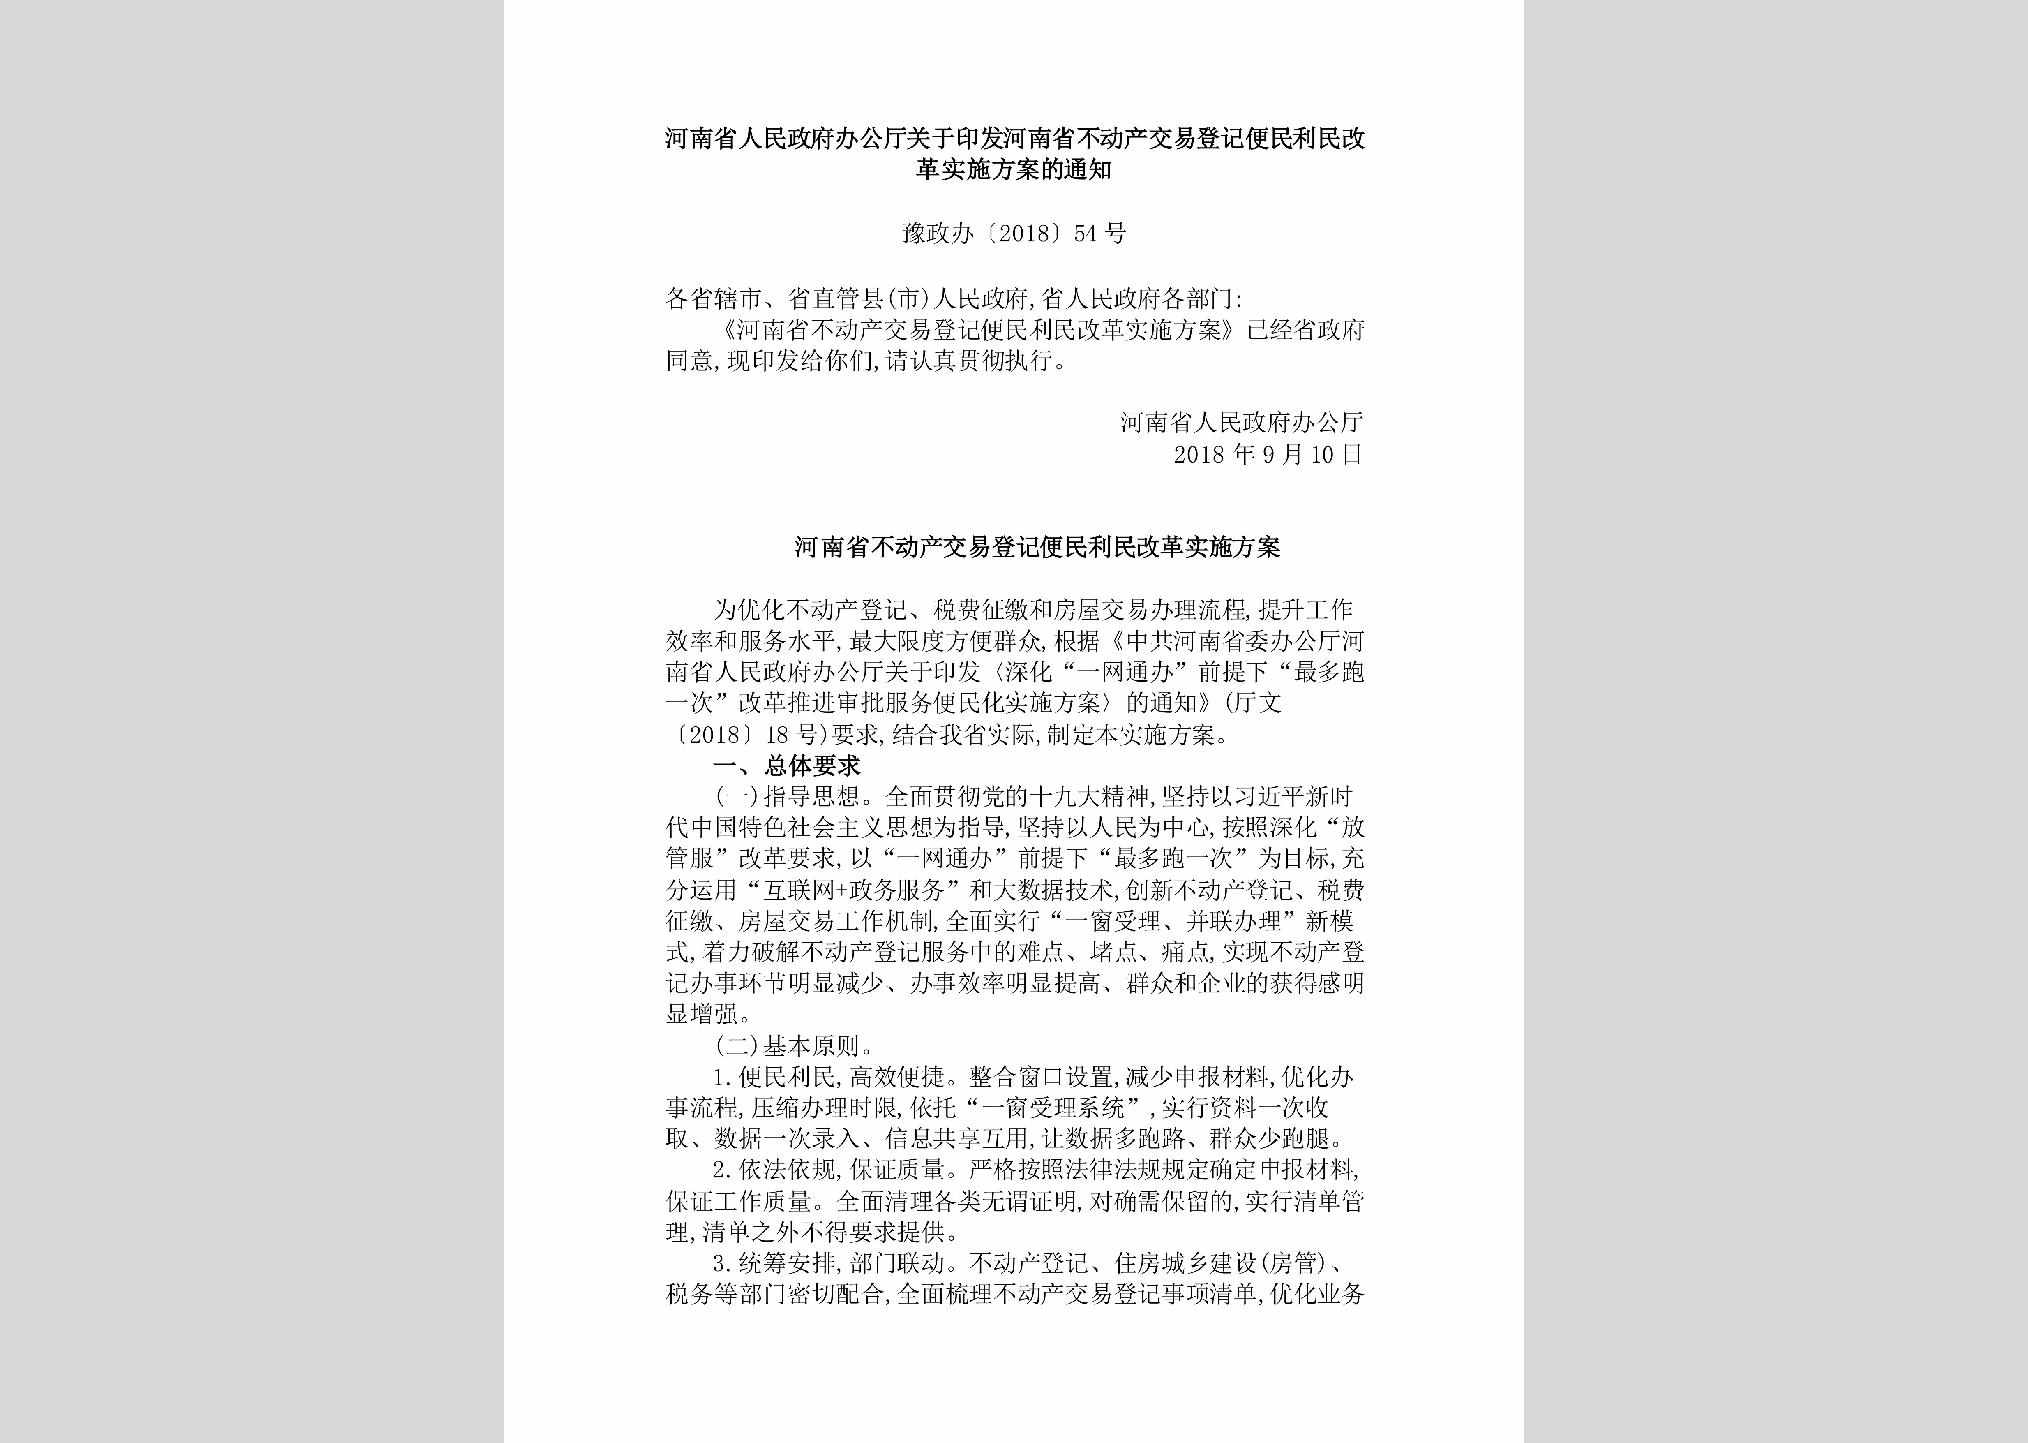 豫政办[2018]54号：河南省人民政府办公厅关于印发河南省不动产交易登记便民利民改革实施方案的通知